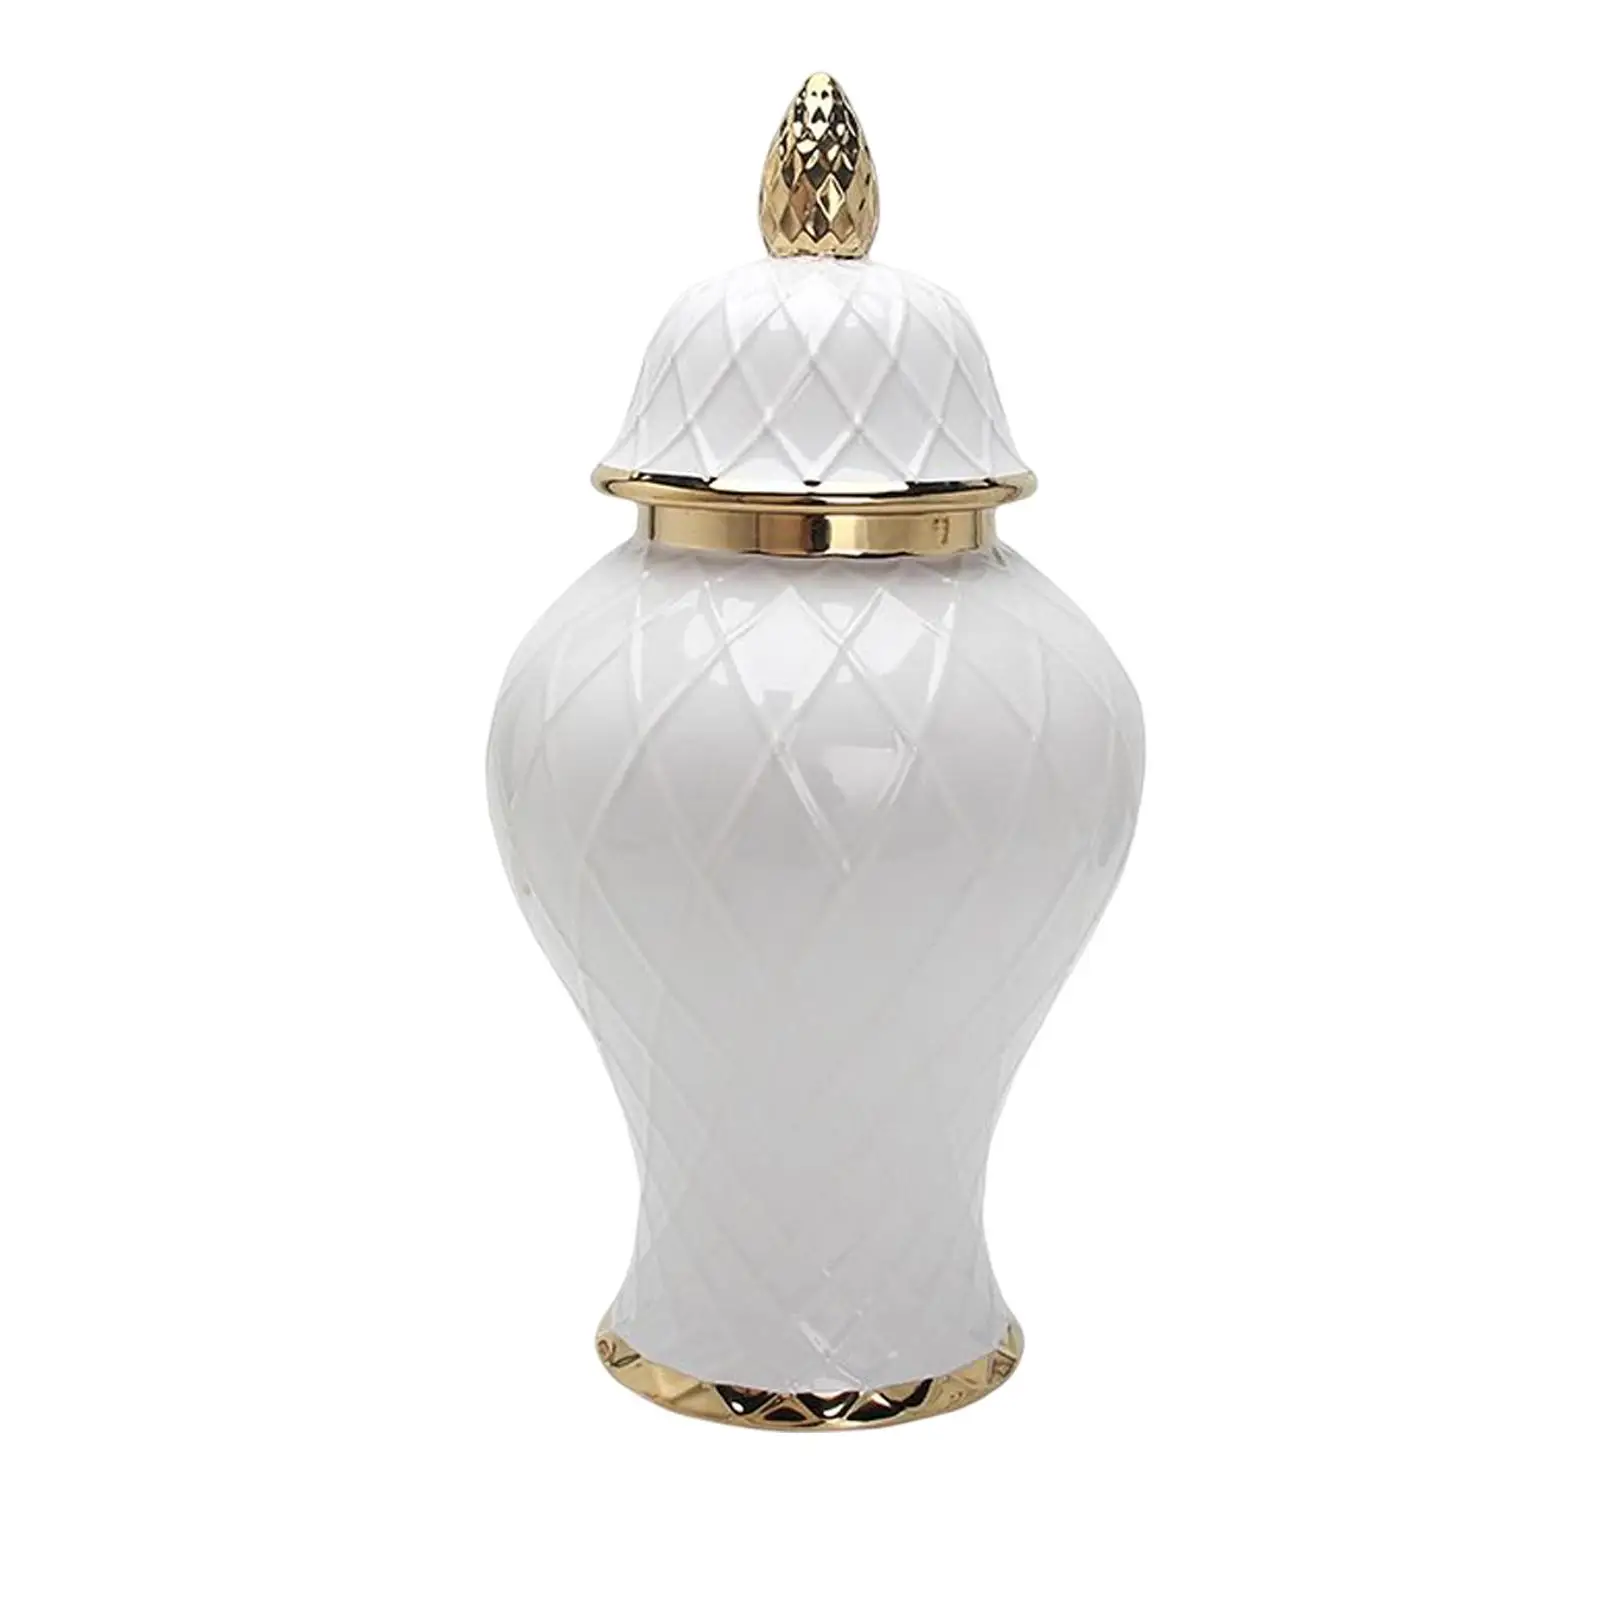 Modern Ceramic Ginger Jar Porcelain Storage Jar Vase Ornament for Home Cafe